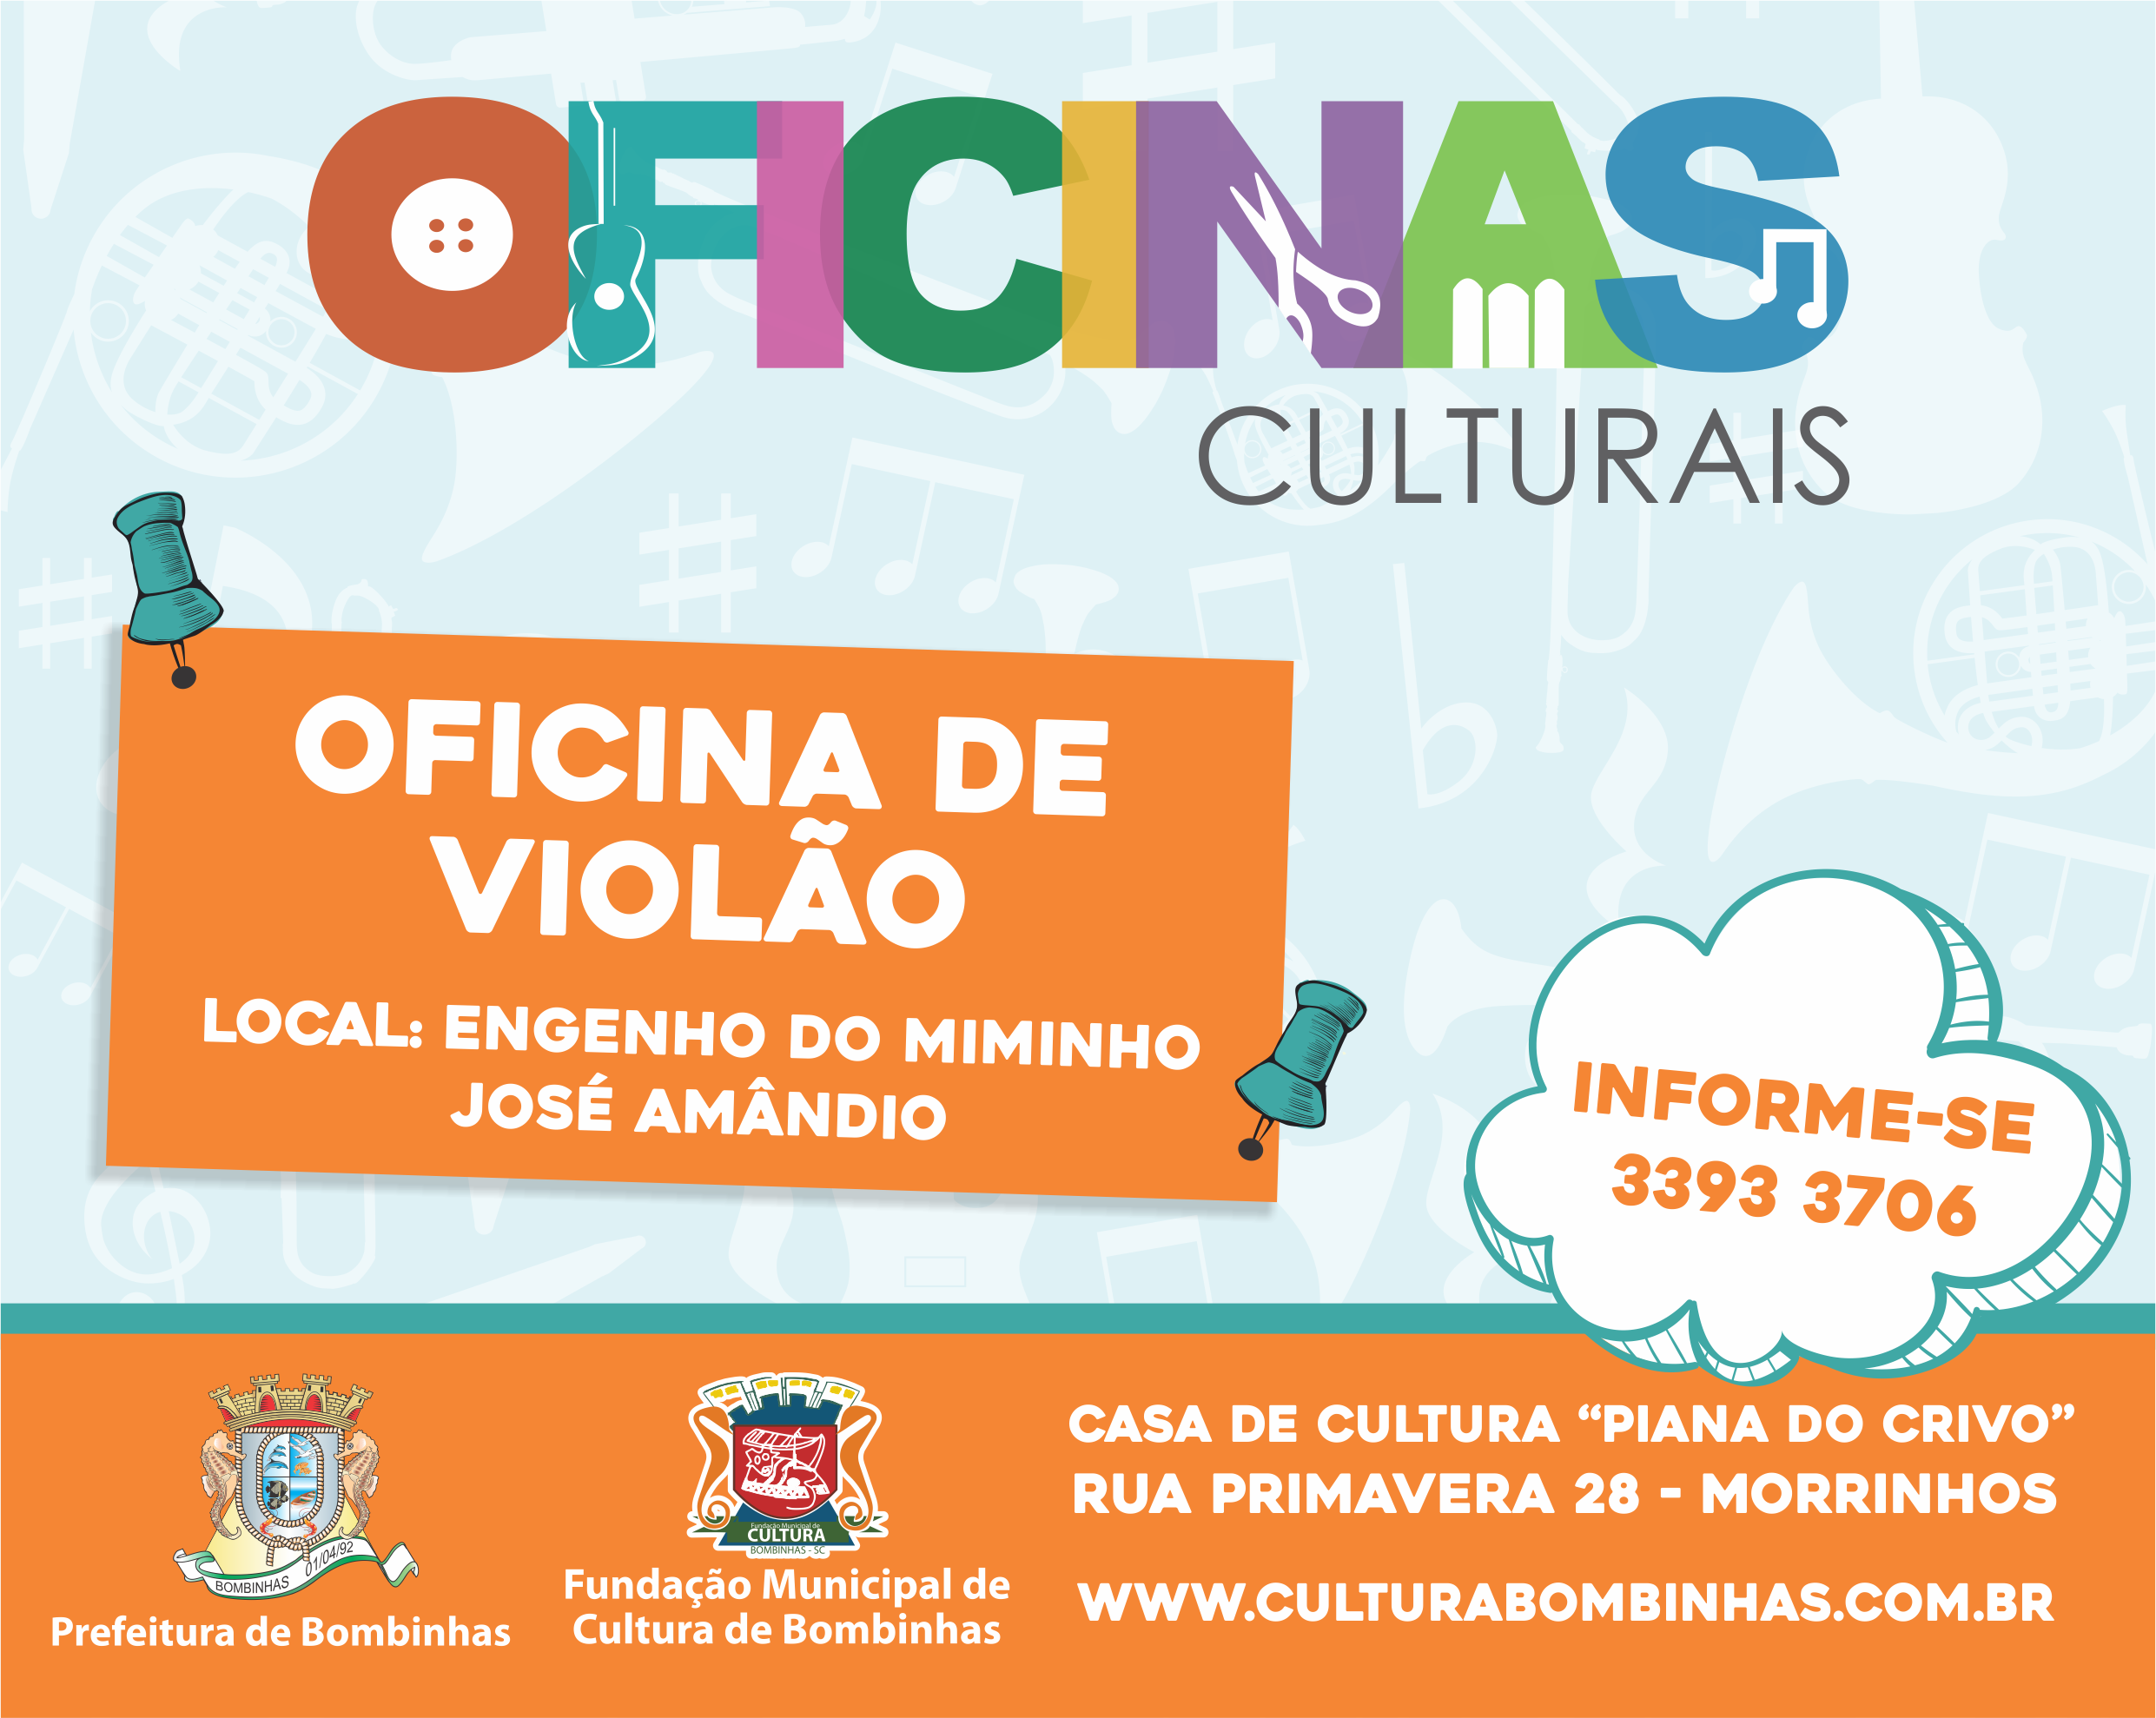 Projeto Oficinas Culturais amplia acesso à comunidade e inicia aulas no bairro José Amândio.